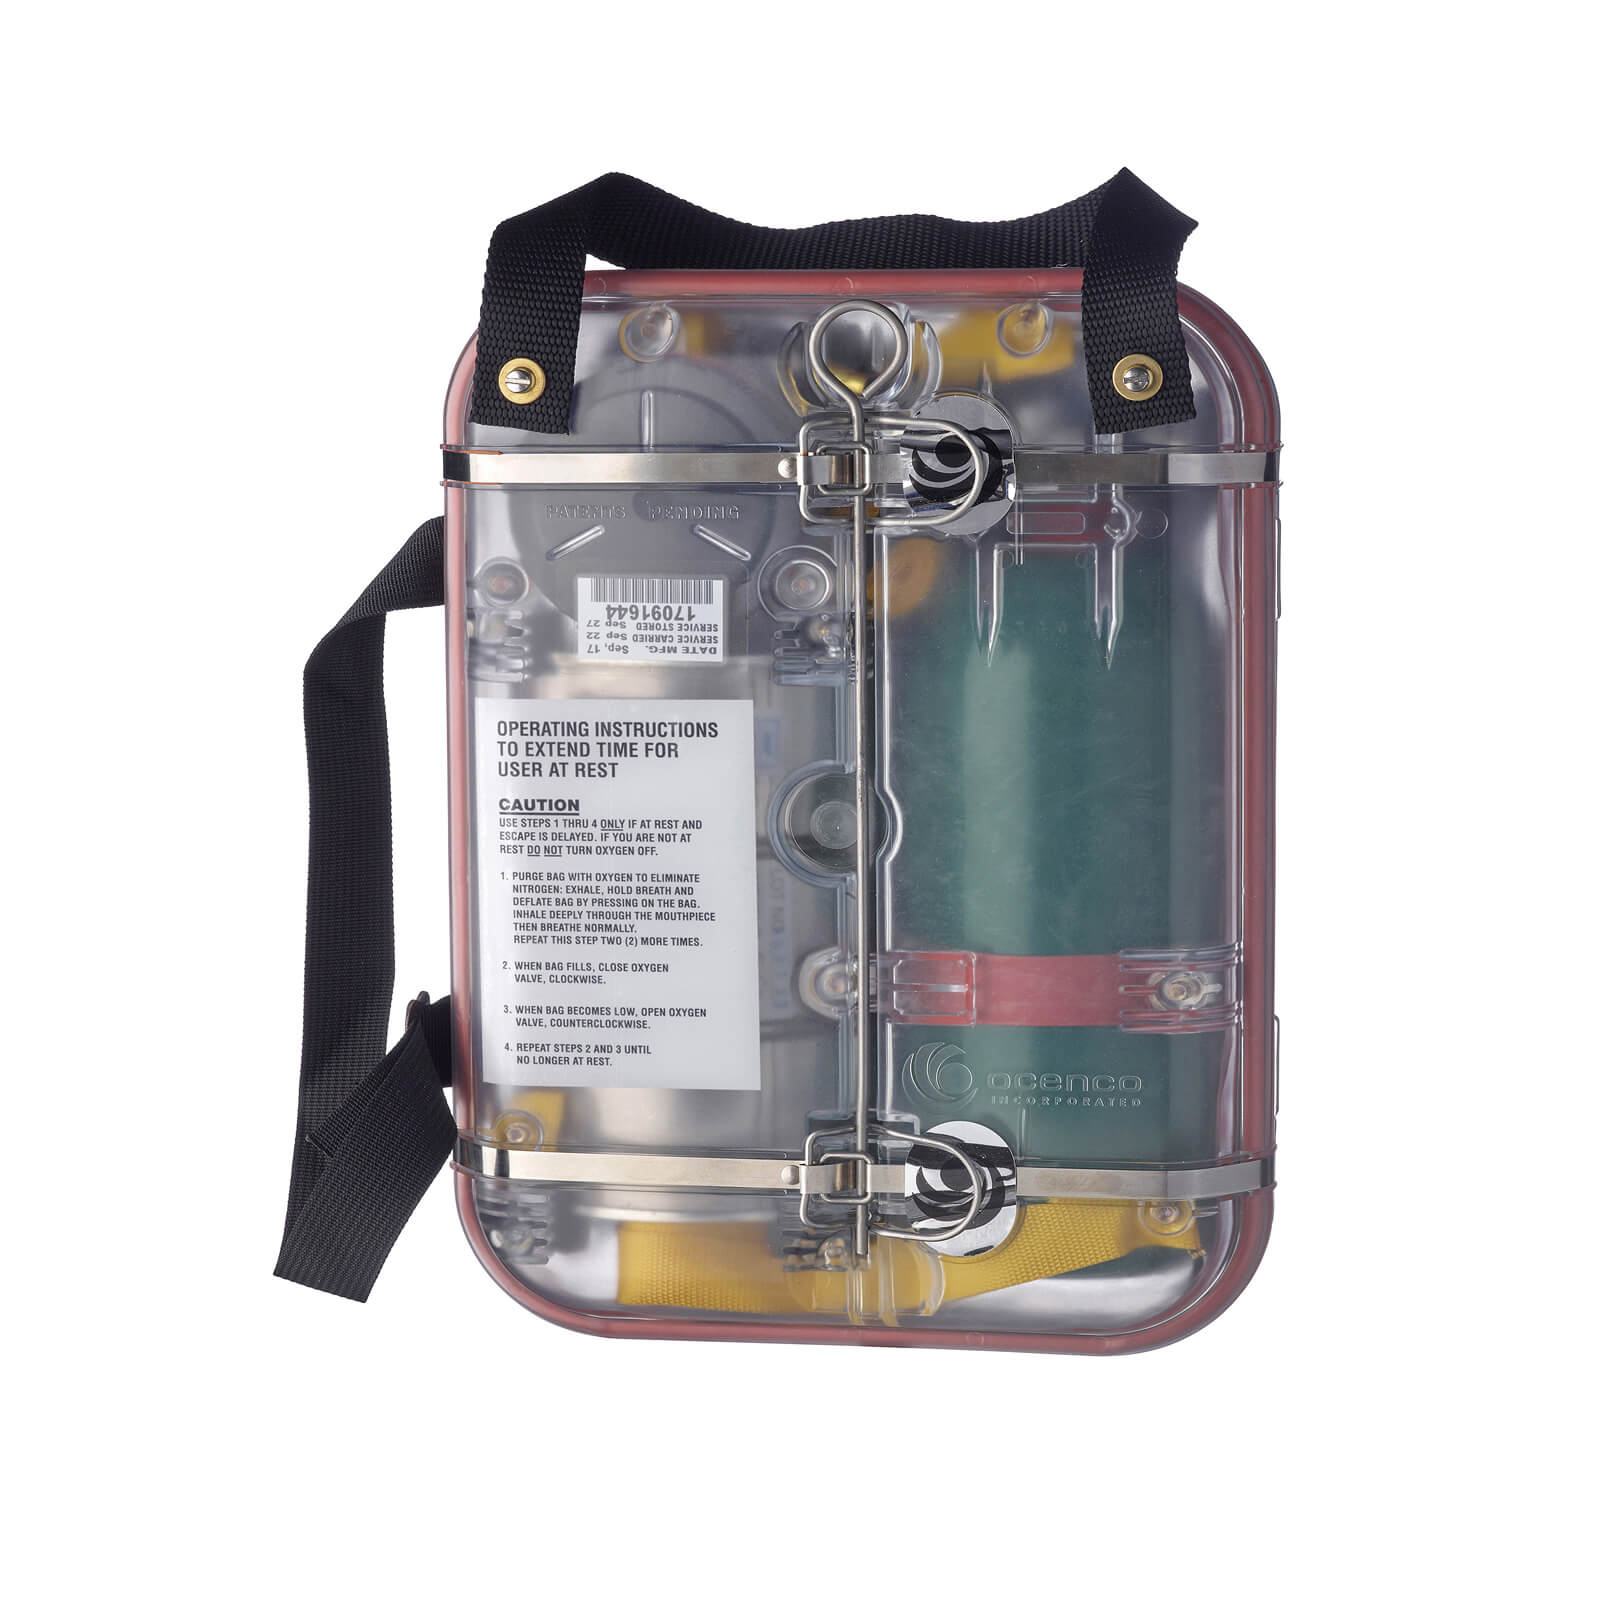 Uređaj za disanje i samoizbavu Interspiro Ocenco EBA6.5